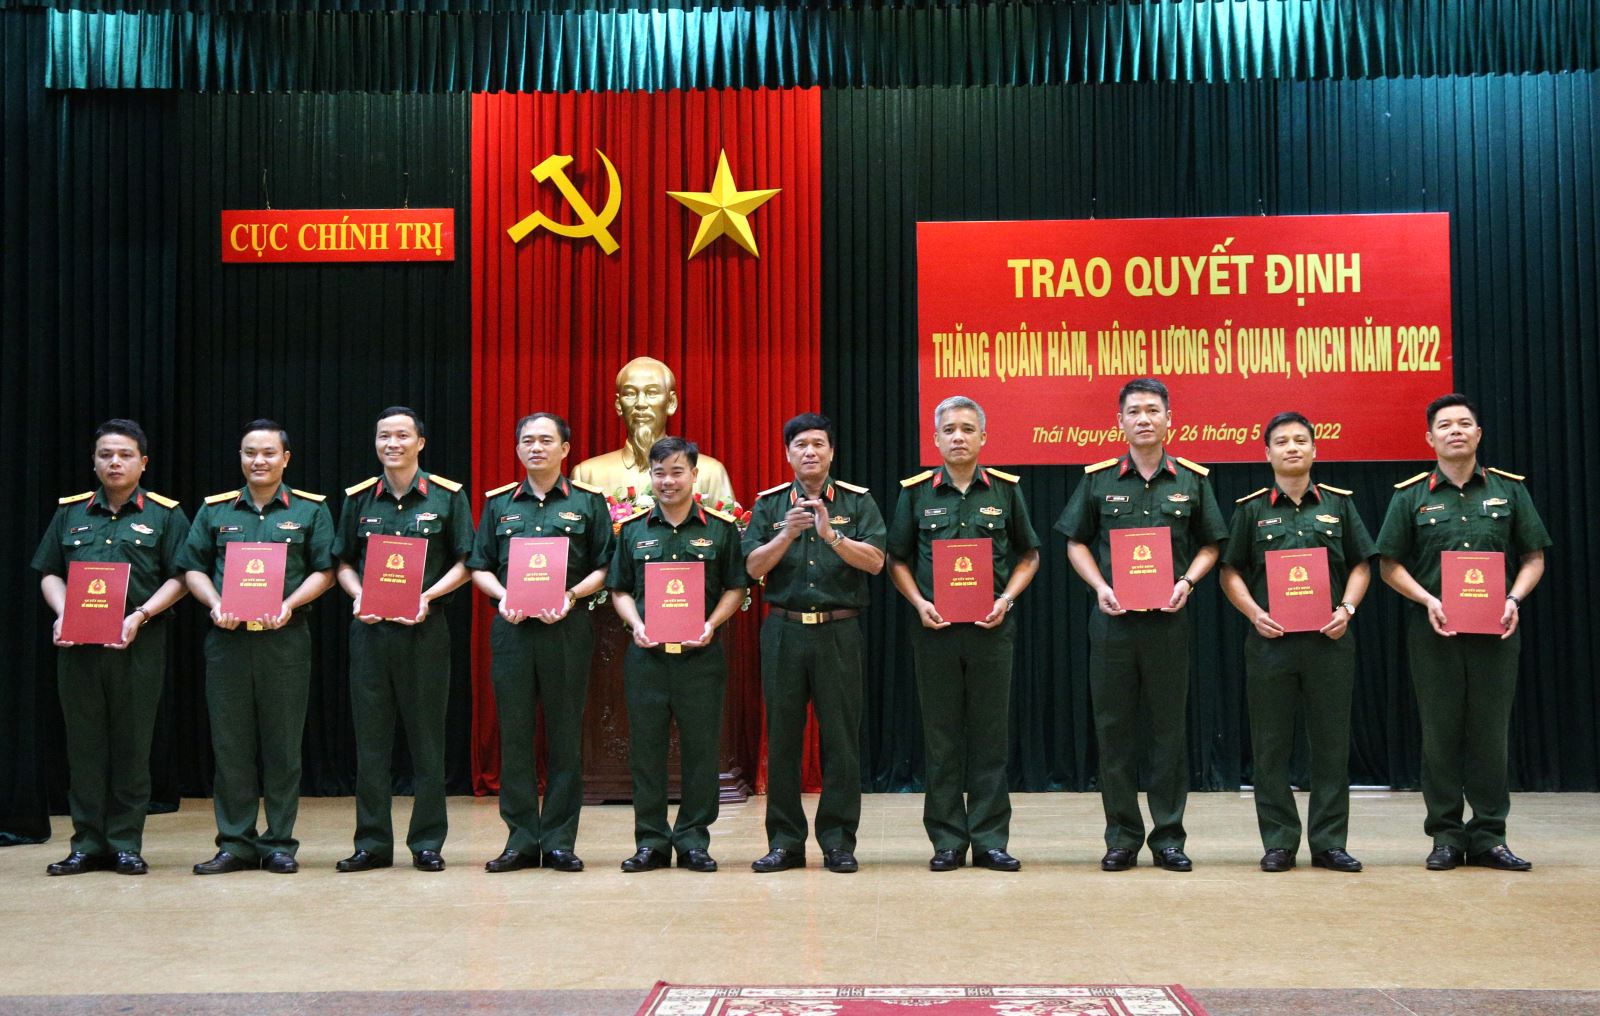 Cục Chính trị: Trao quyết định thăng quân hàm, nâng lương sĩ quan, quân nhân chuyên nghiệp năm 2022